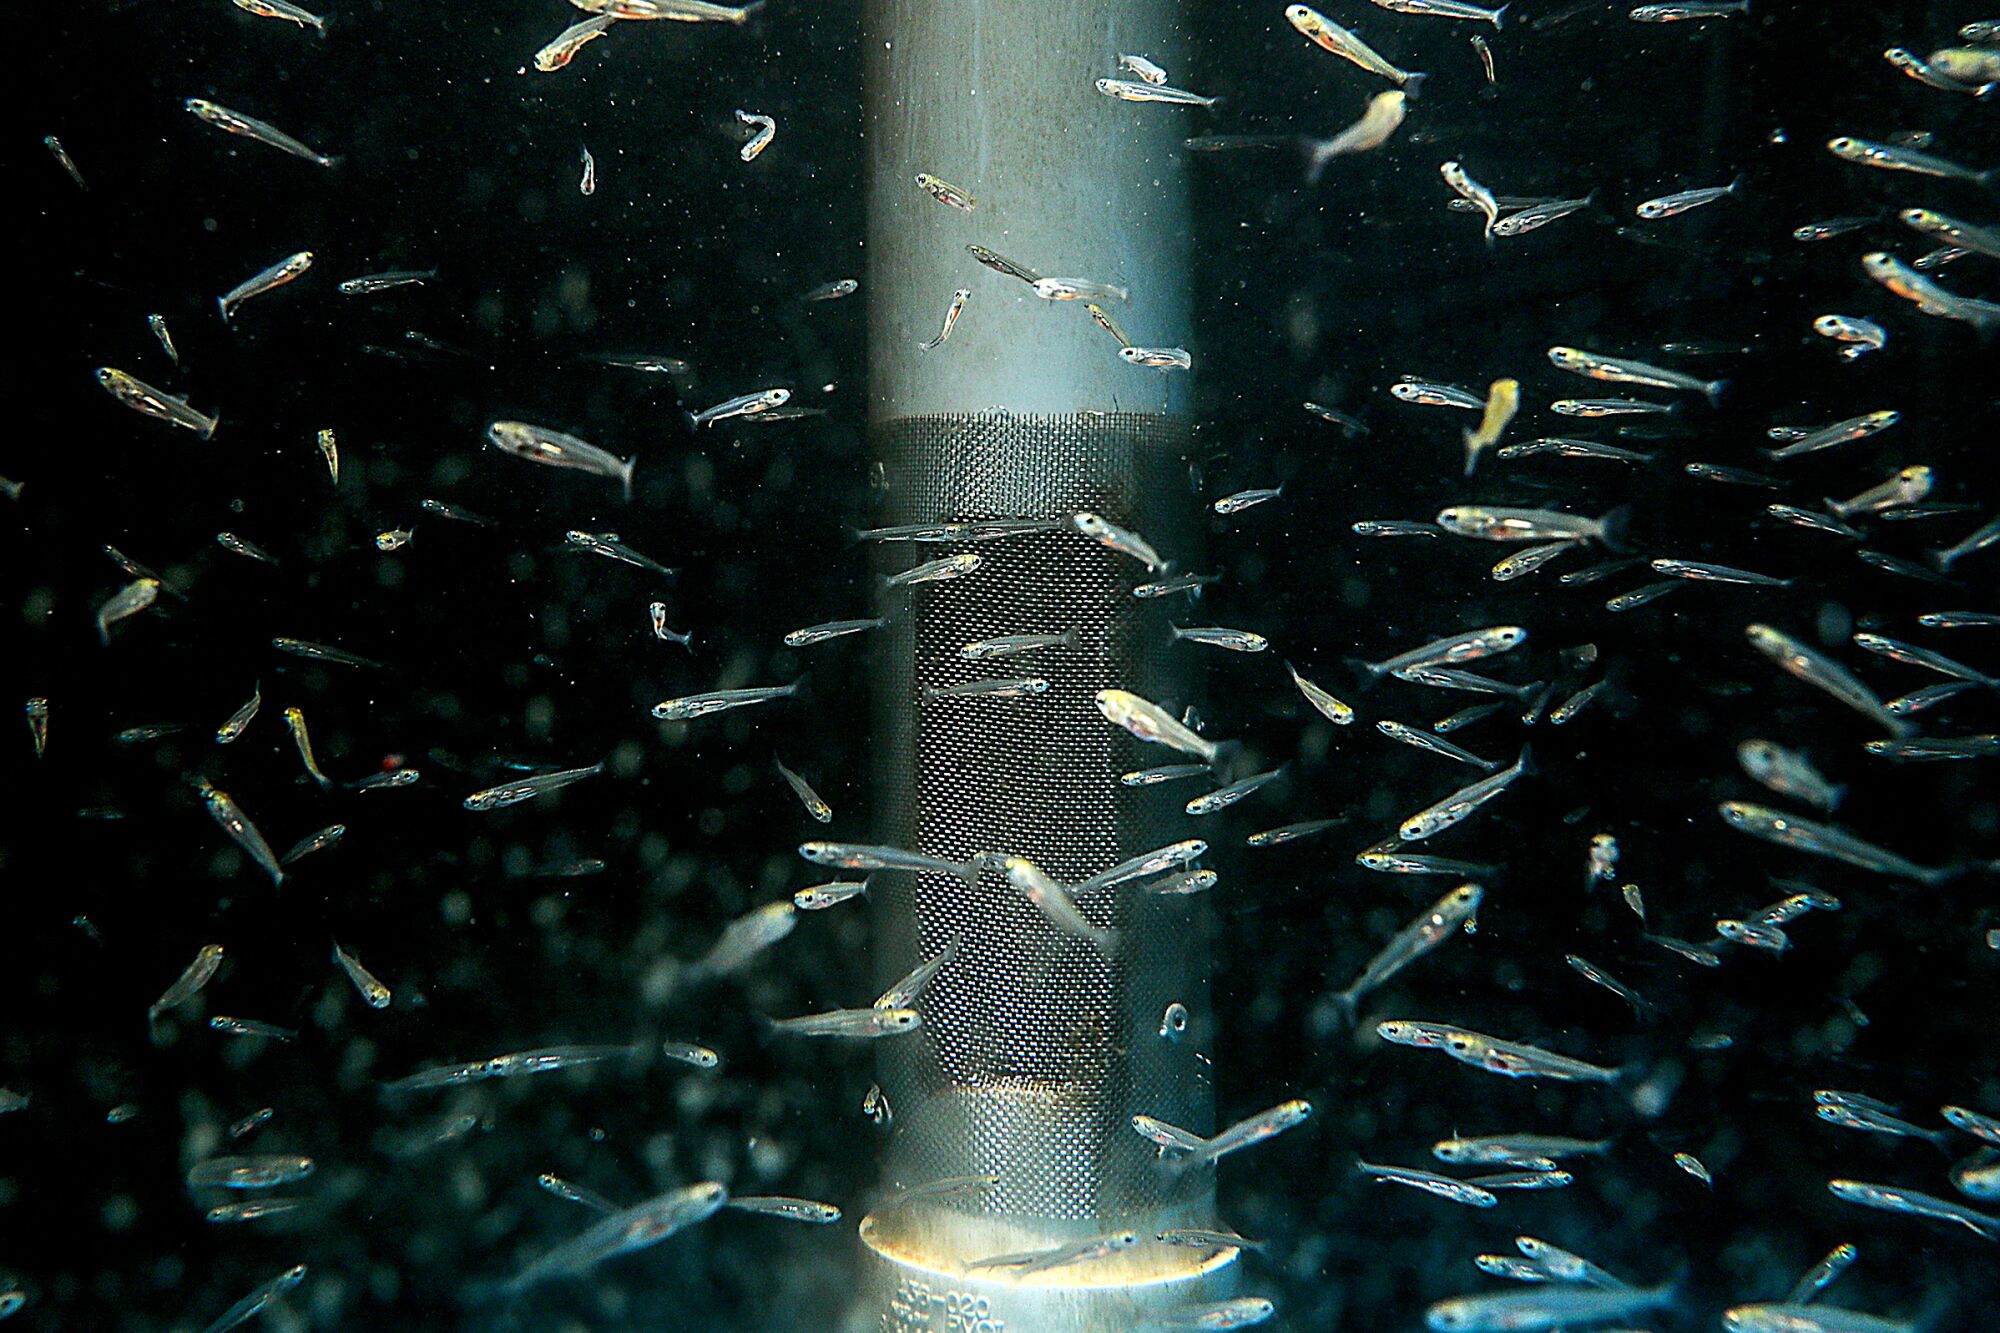 June 9: Endangered sucker fish swim near a metal column